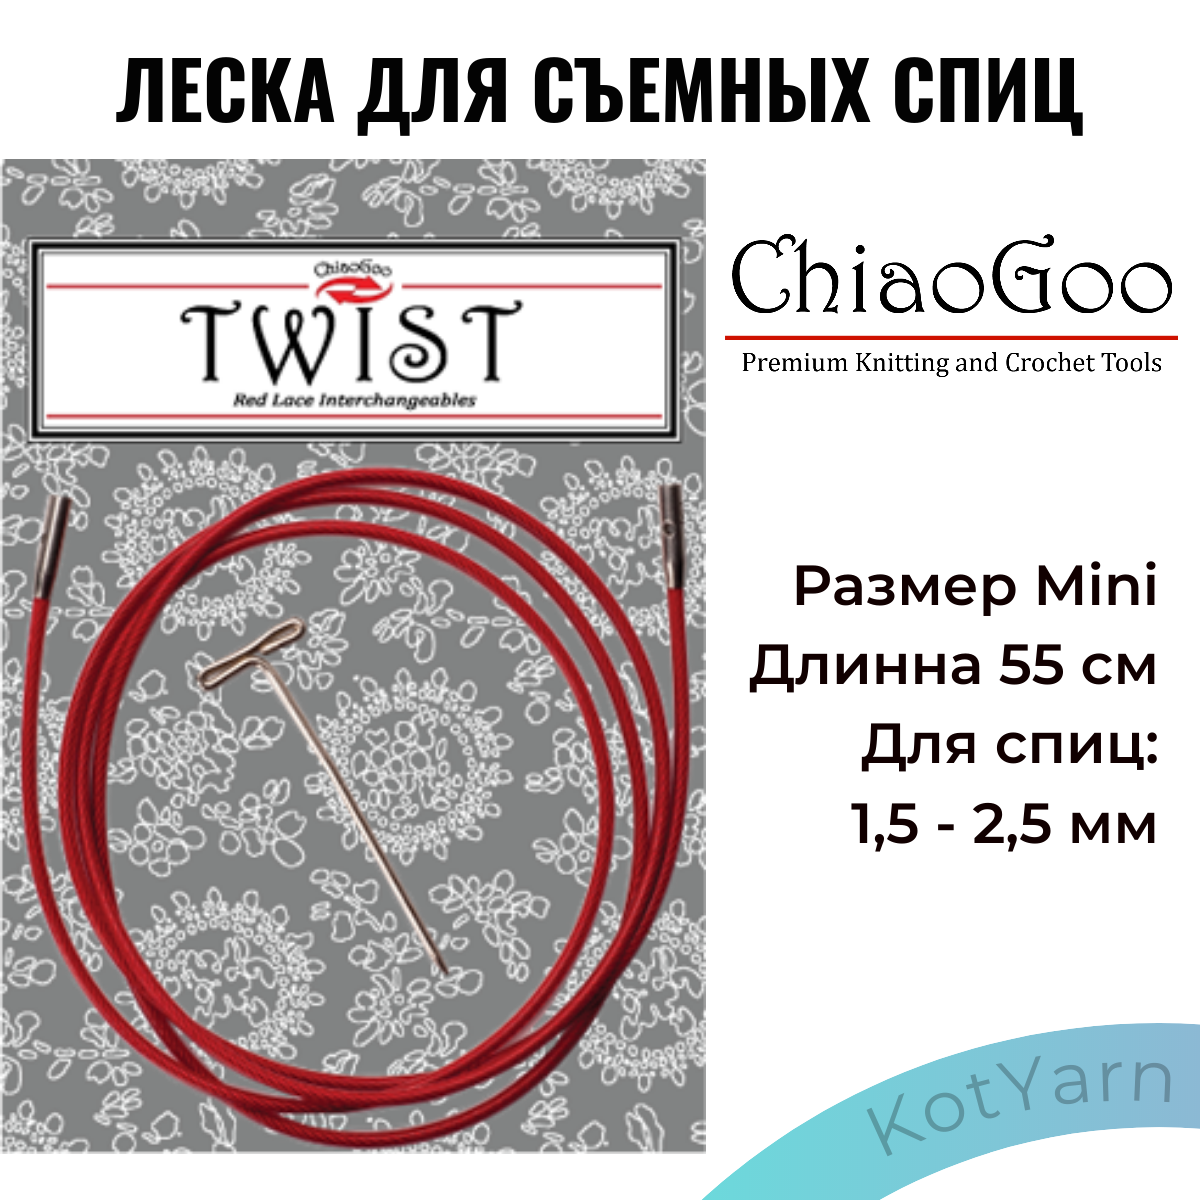 Леска для съемных спиц ChiaoGoo Twist размер Mini для спиц 1,5-2,5мм (55 см)